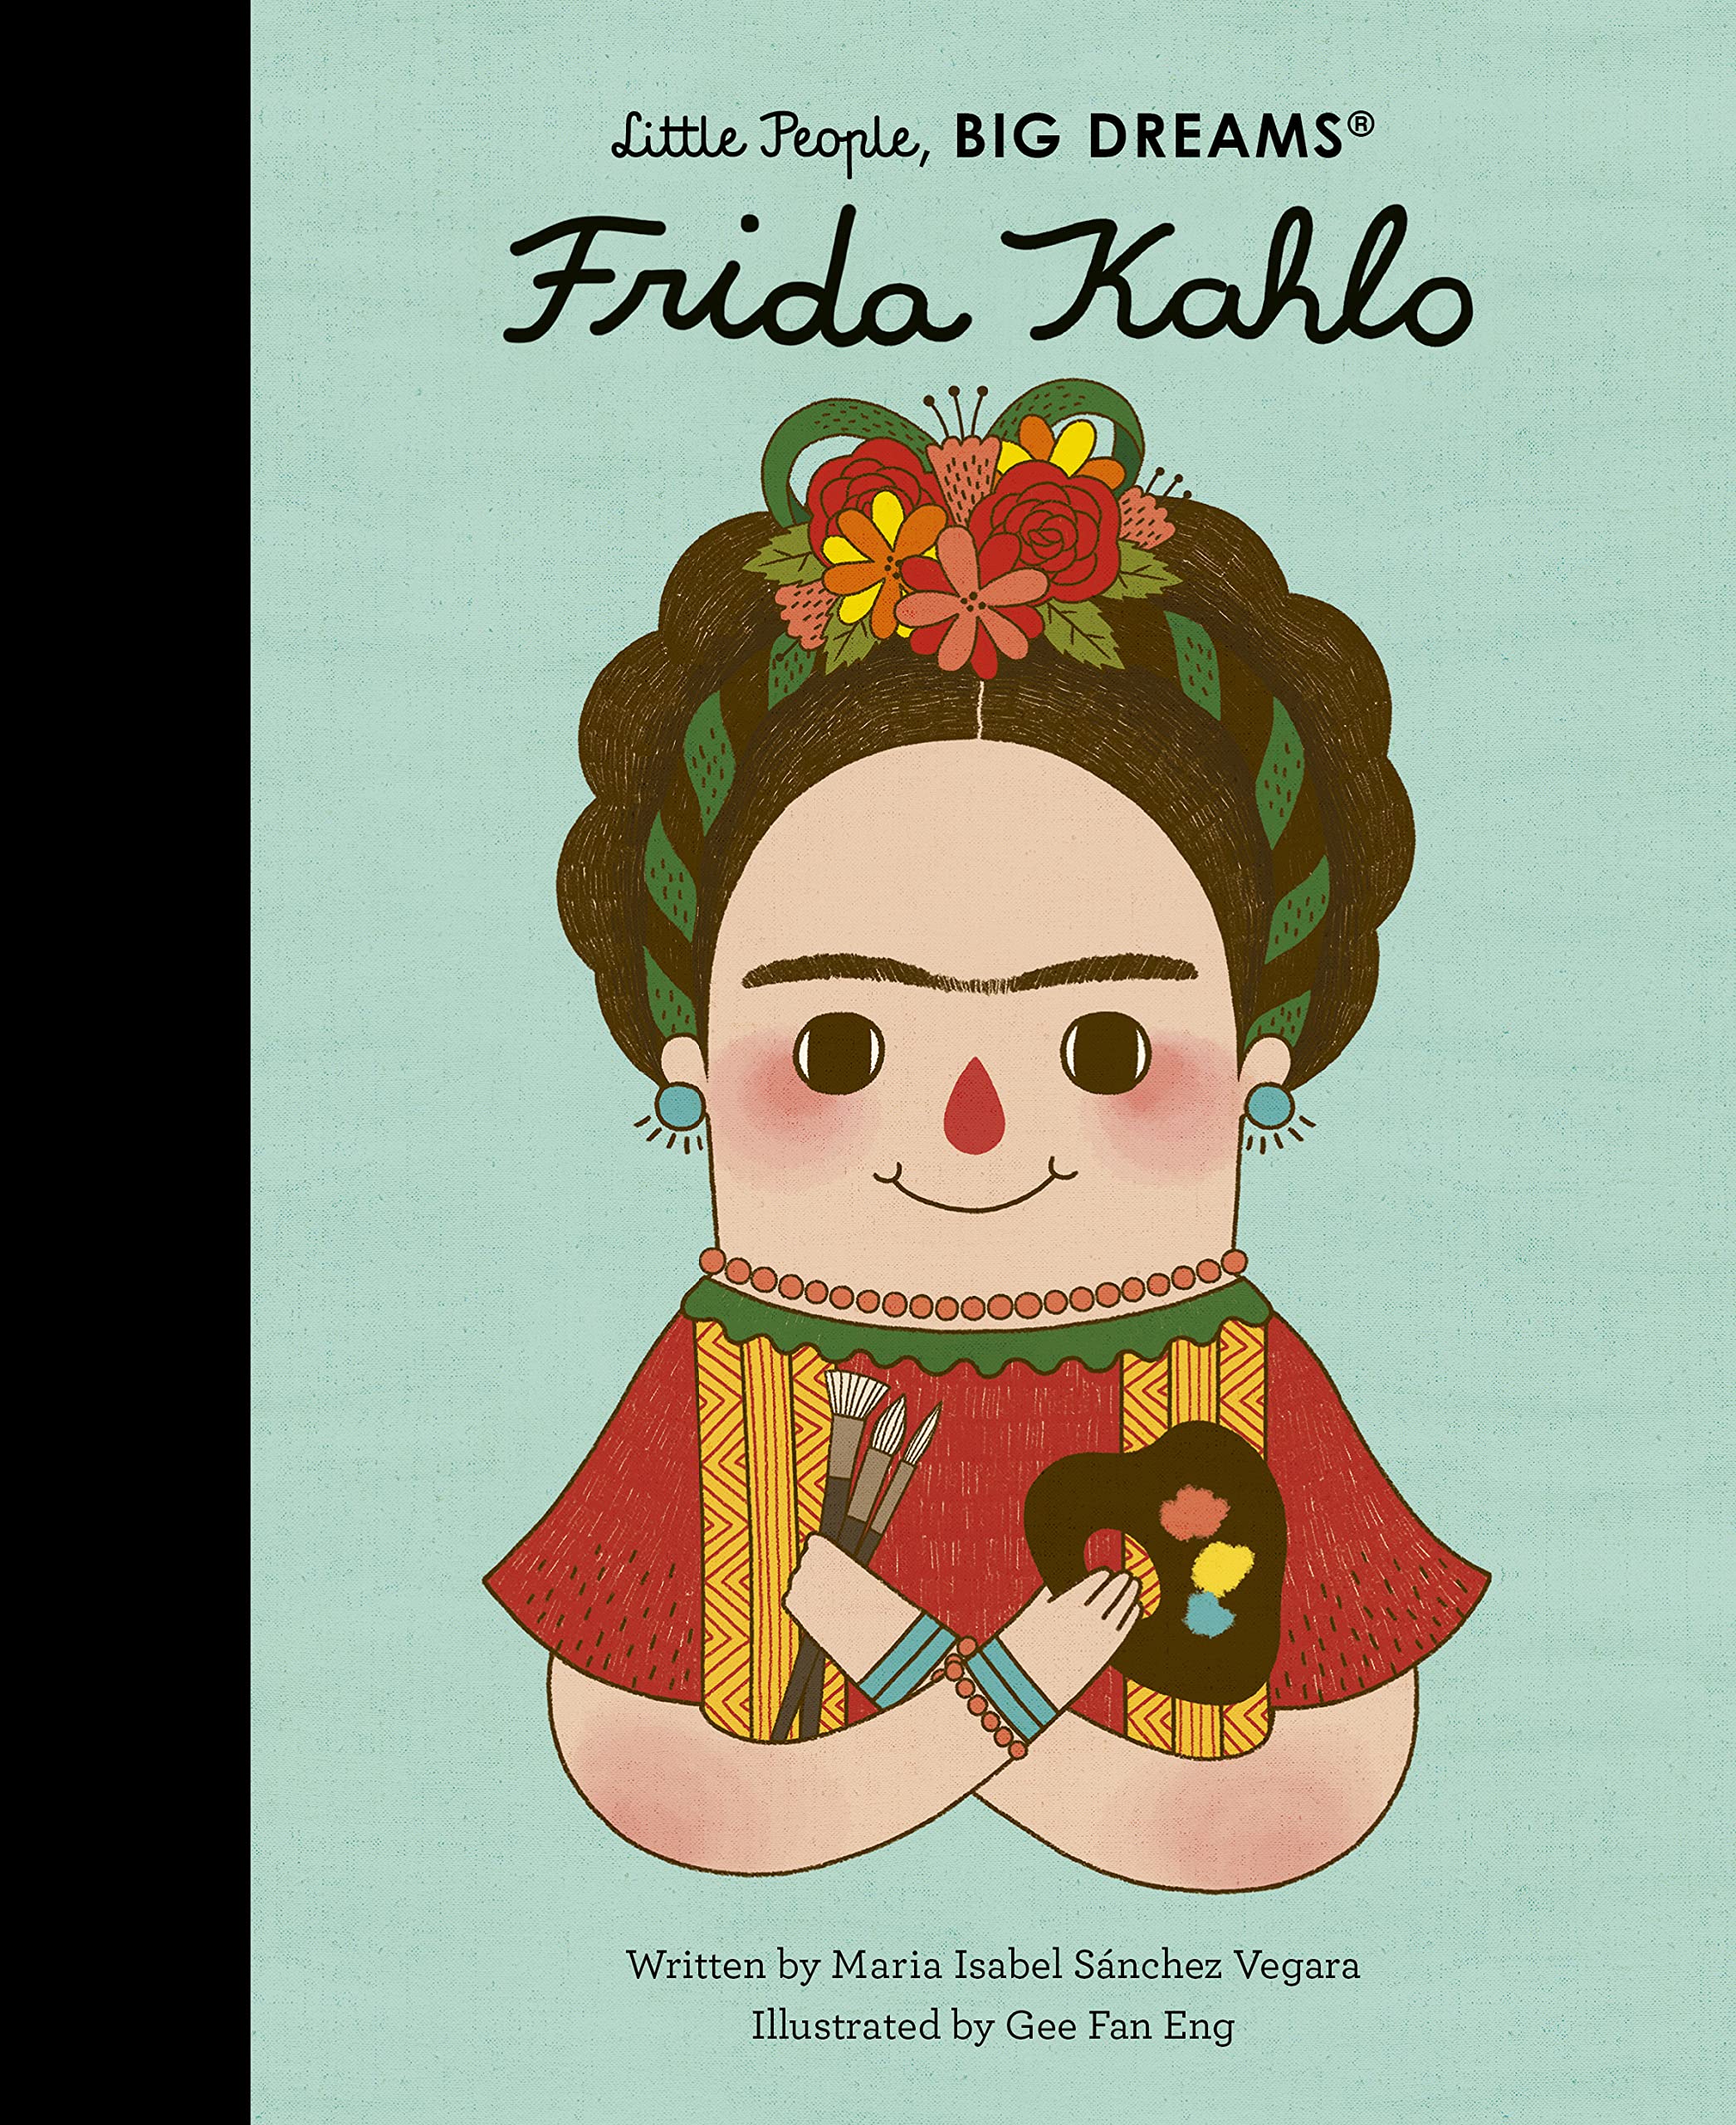 Little People, BIG DREAMS - Frida Kahlo